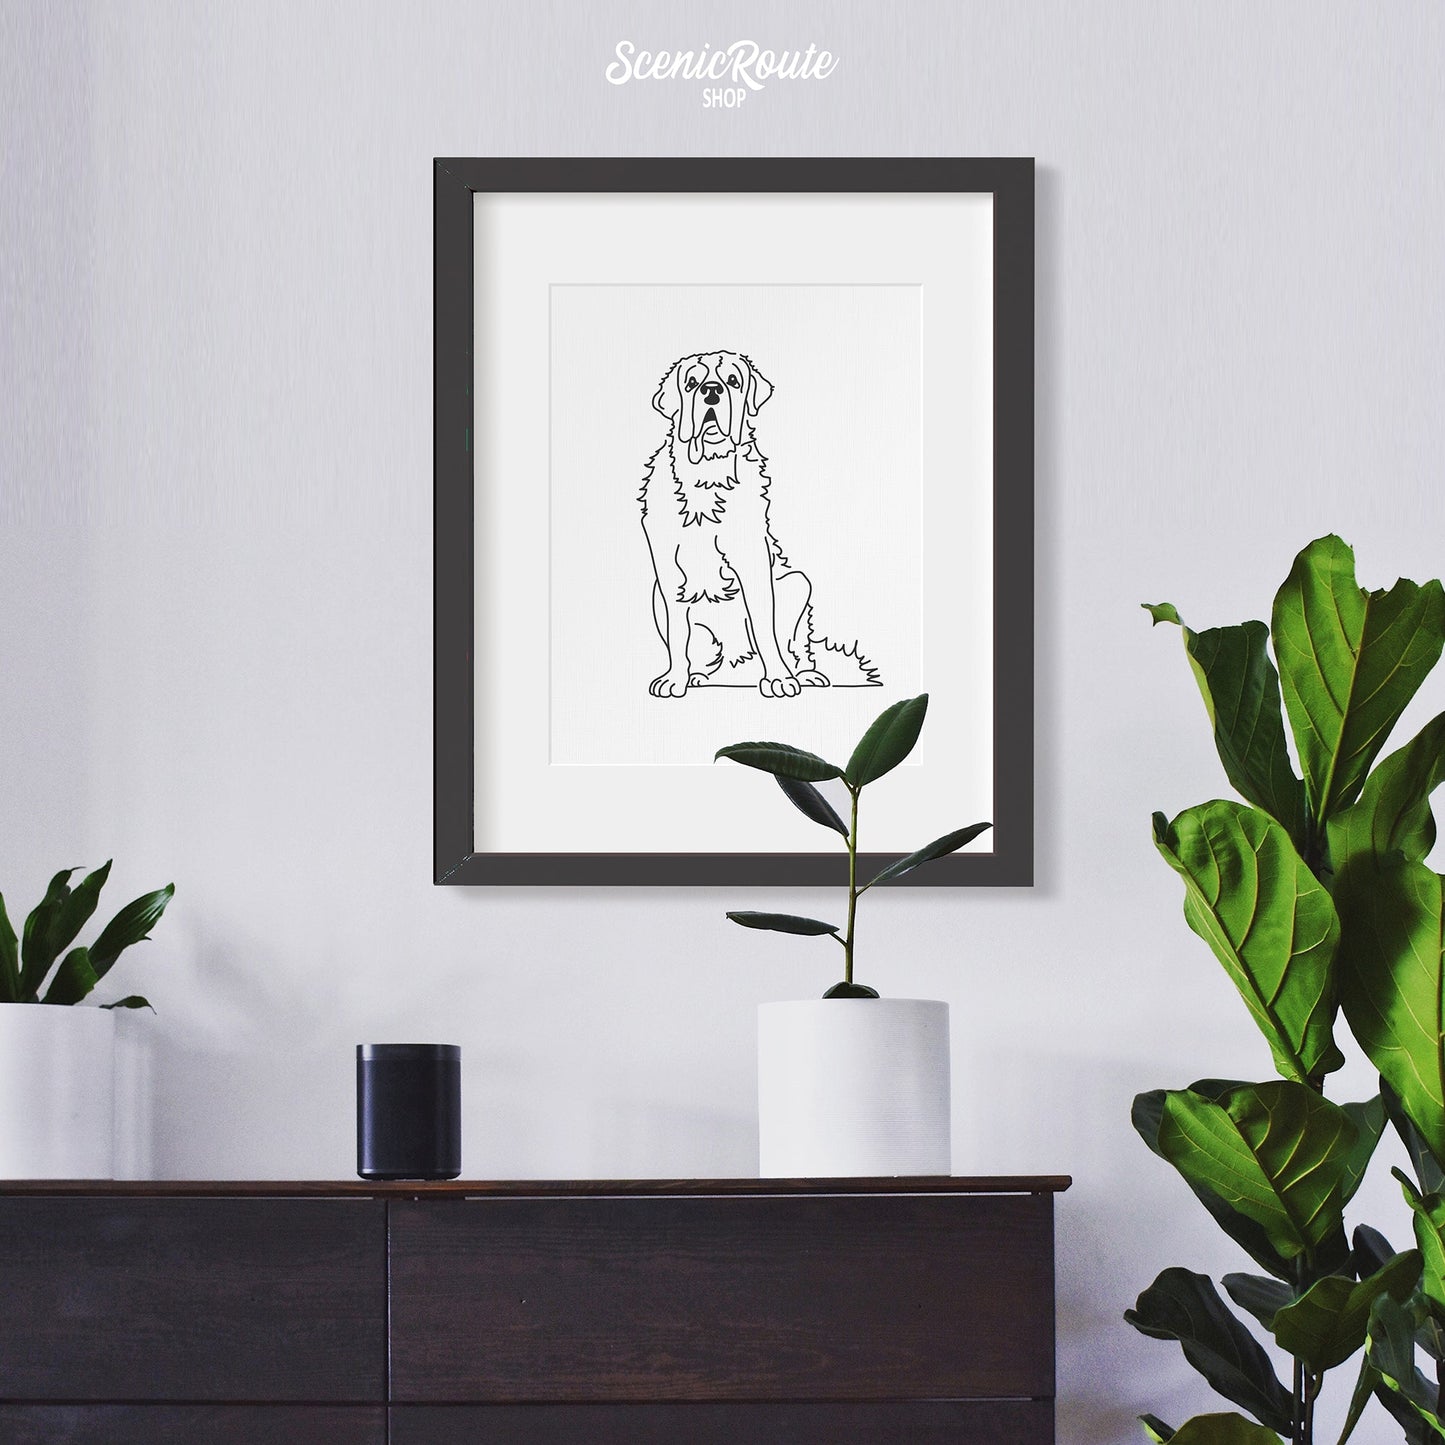 A framed line art drawing of a Saint Bernard hung above a dresser with plants